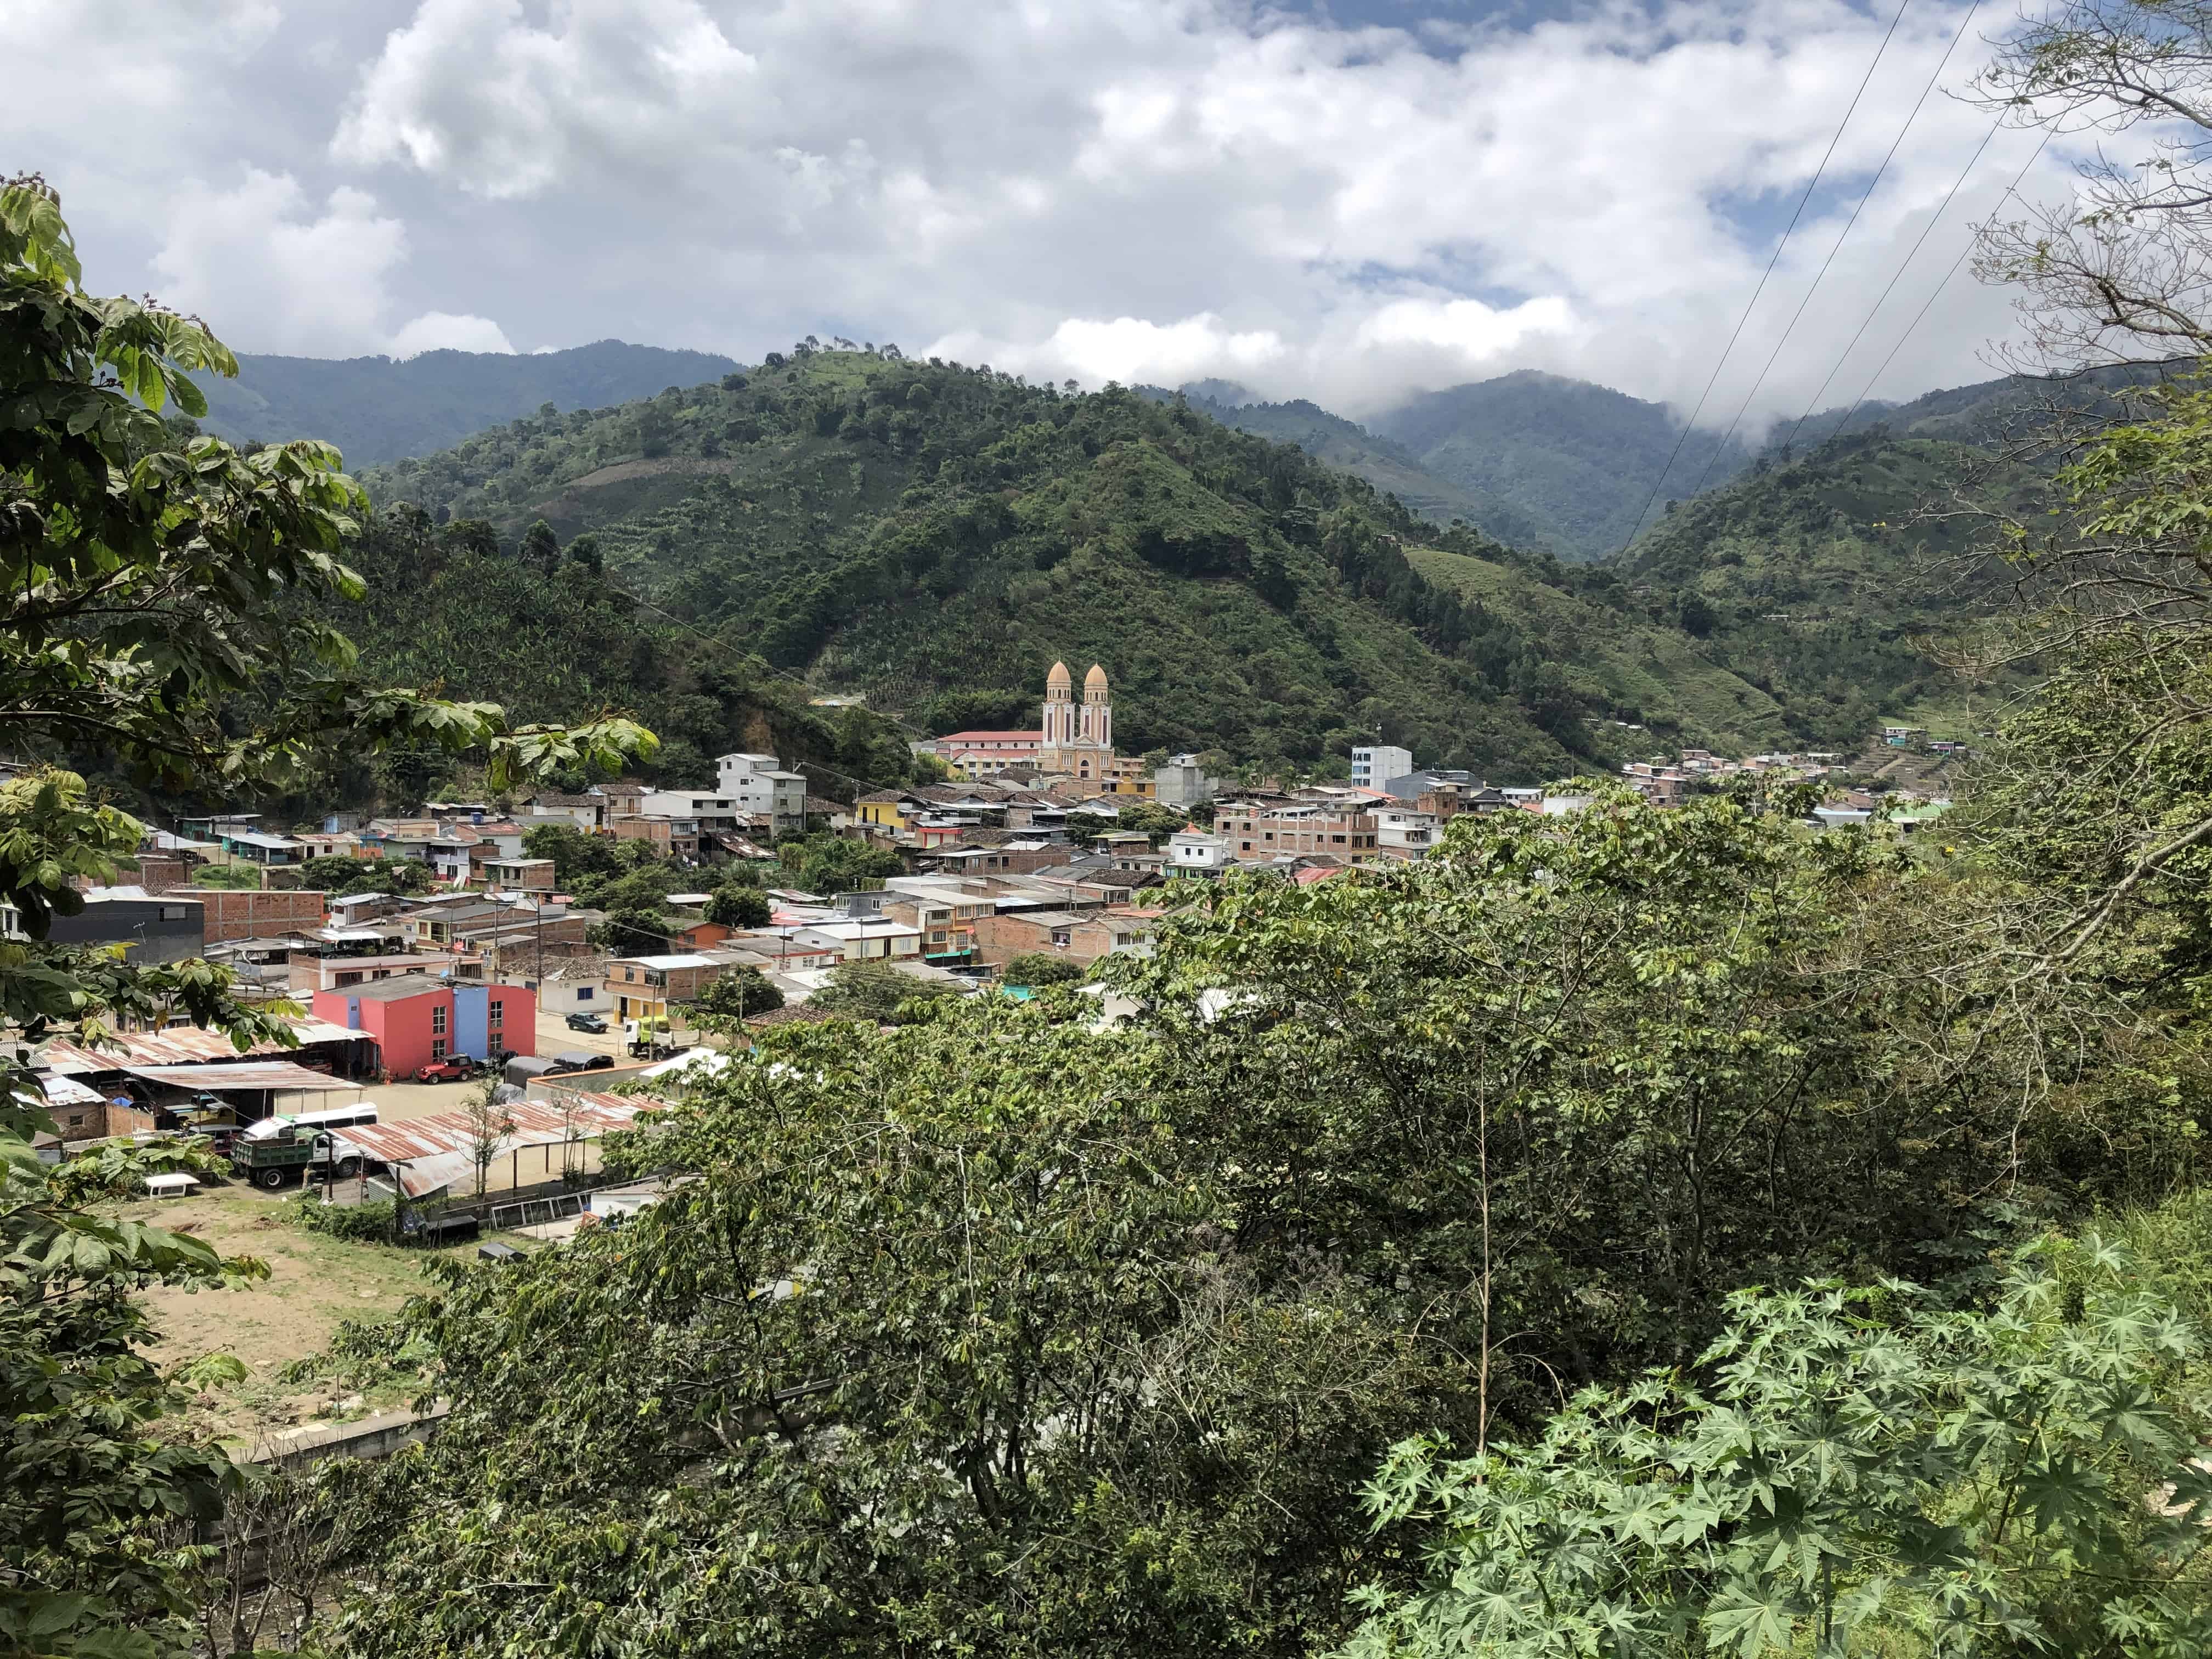 Mistrató, Risaralda, Colombia